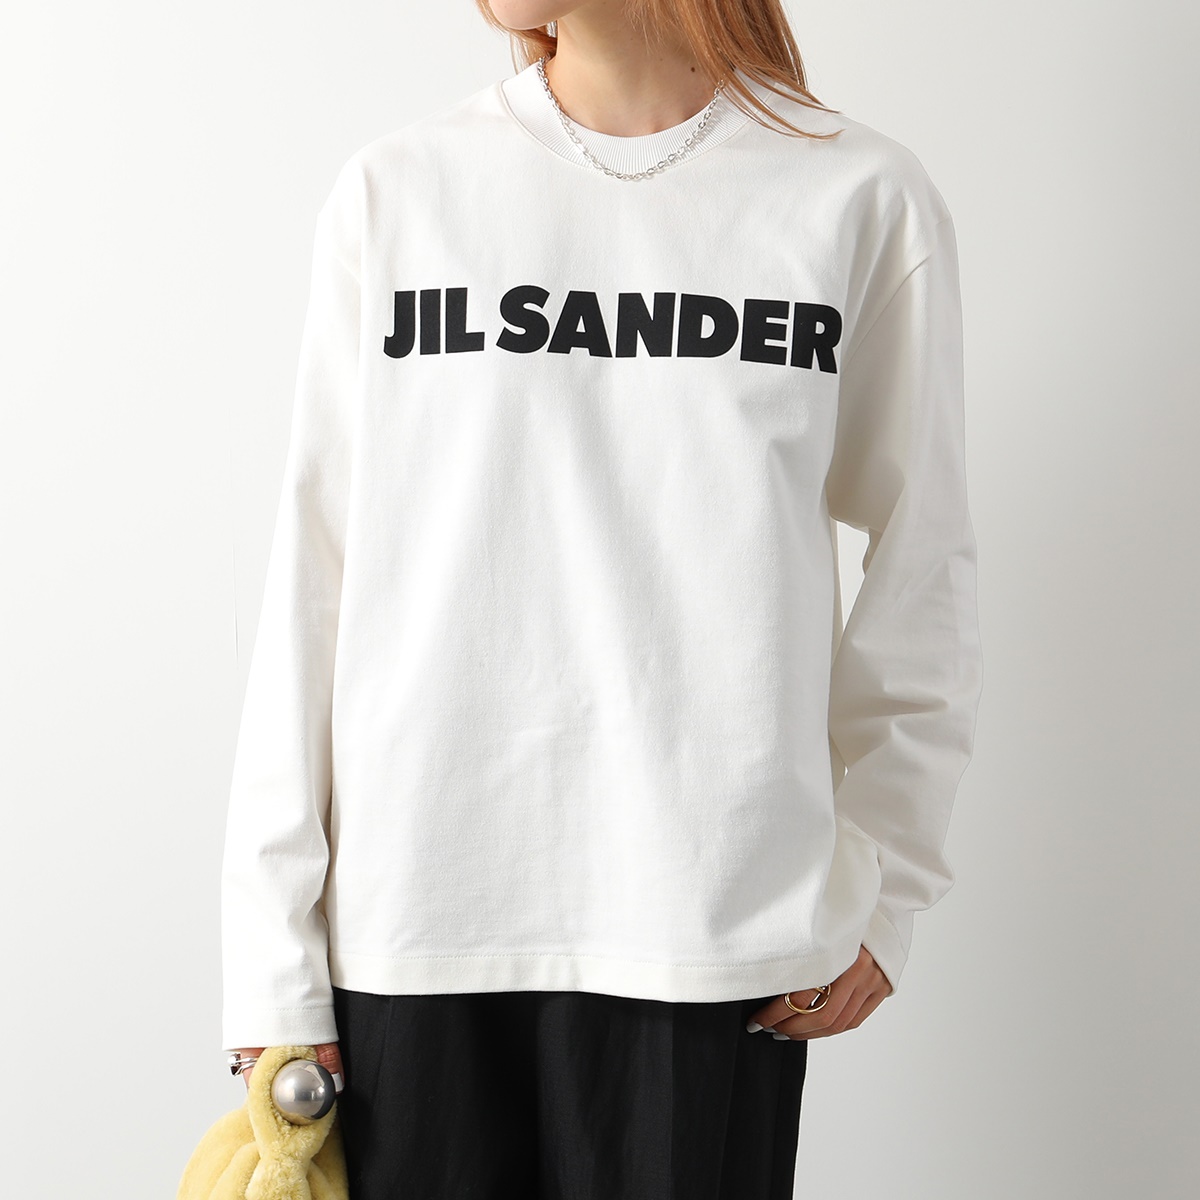 JILSANDER ジルサンダー 半袖ロゴTシャツ Lサイズ - メンズファッション